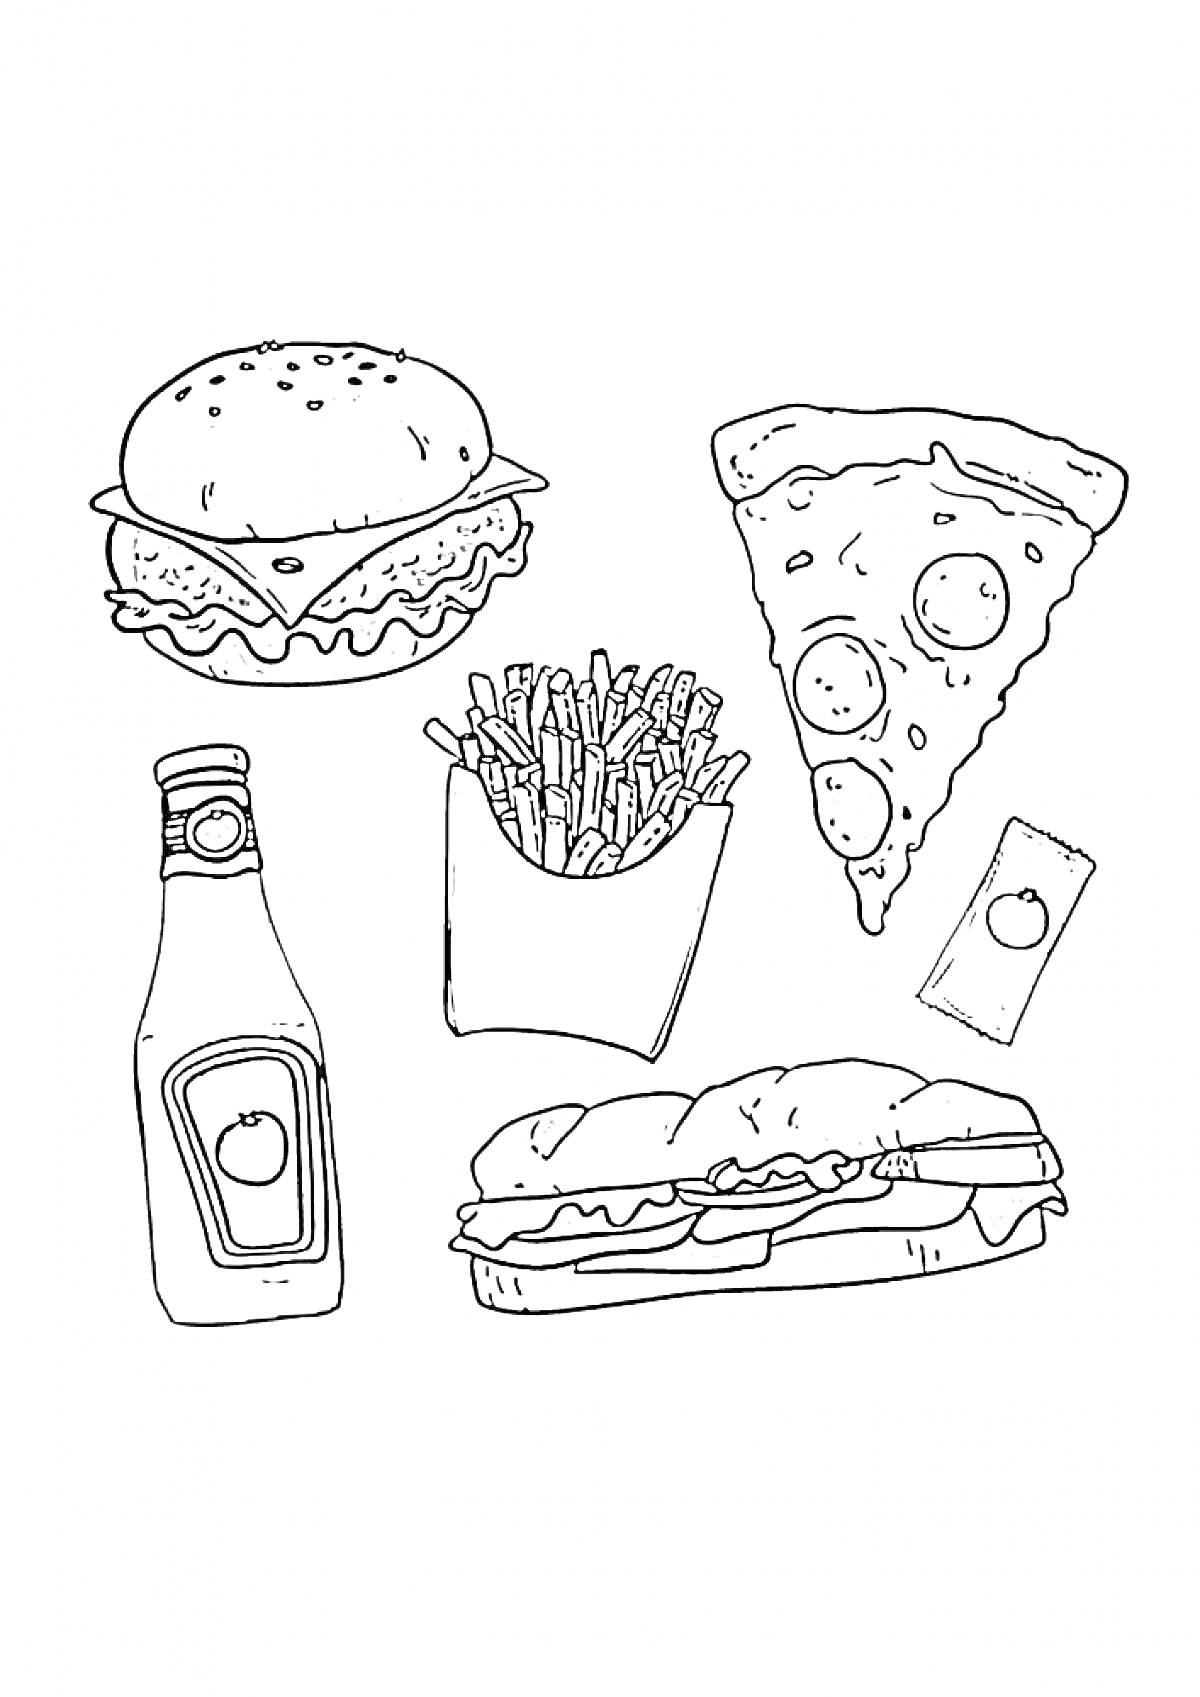 Бургер, пицца, картофель фри, соус в пакетике, бутерброд, бутылка с соусом